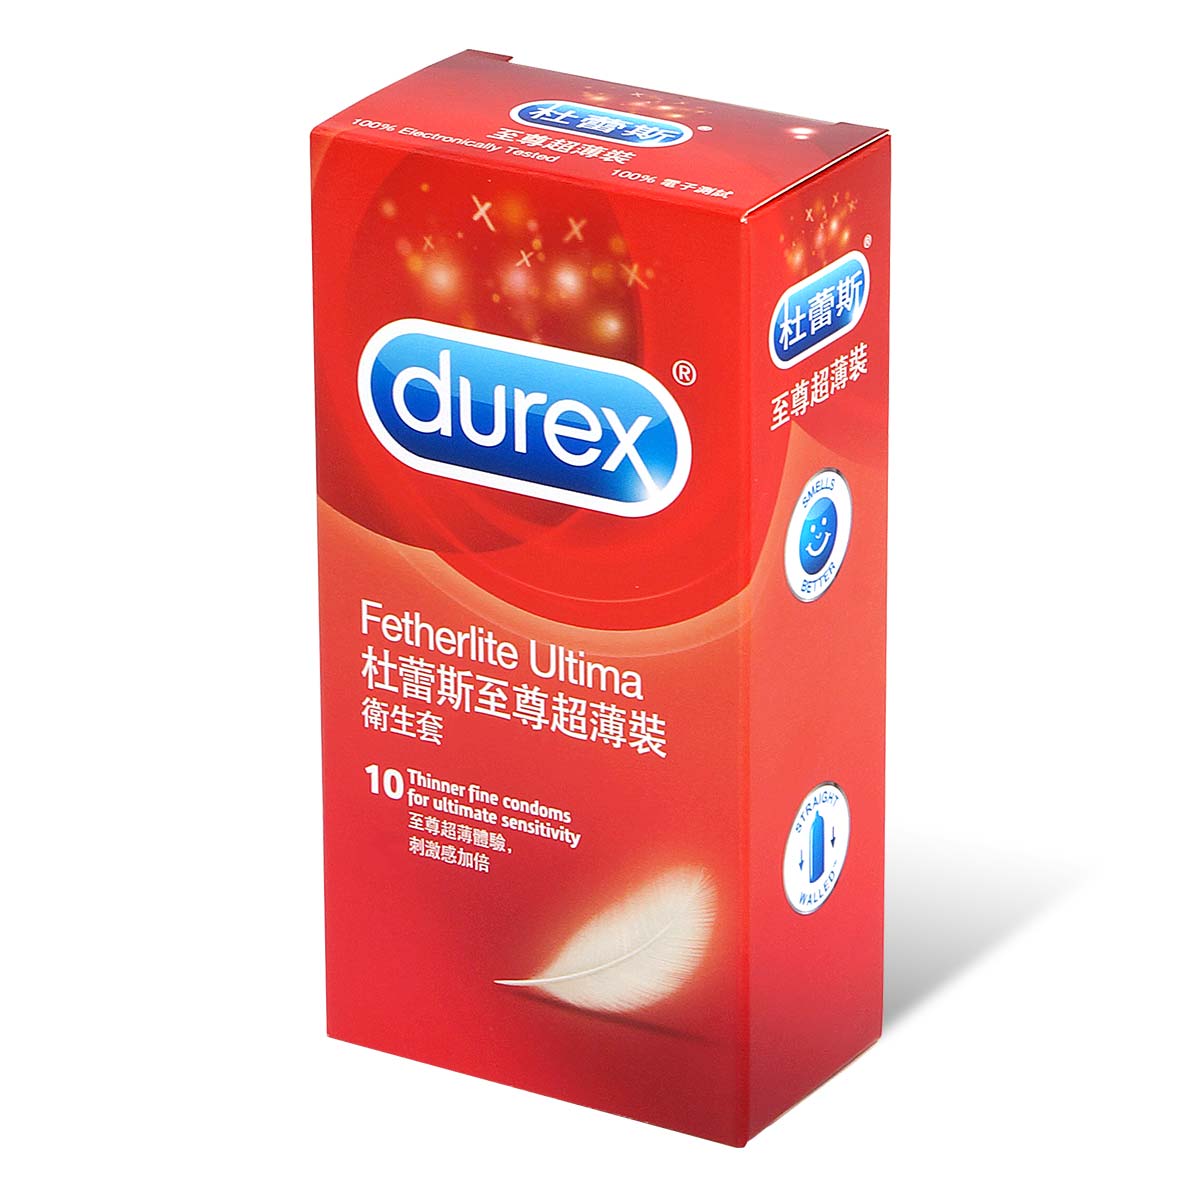 Durex 杜蕾斯 至尊超薄裝 10 片裝 乳膠保險套-p_1